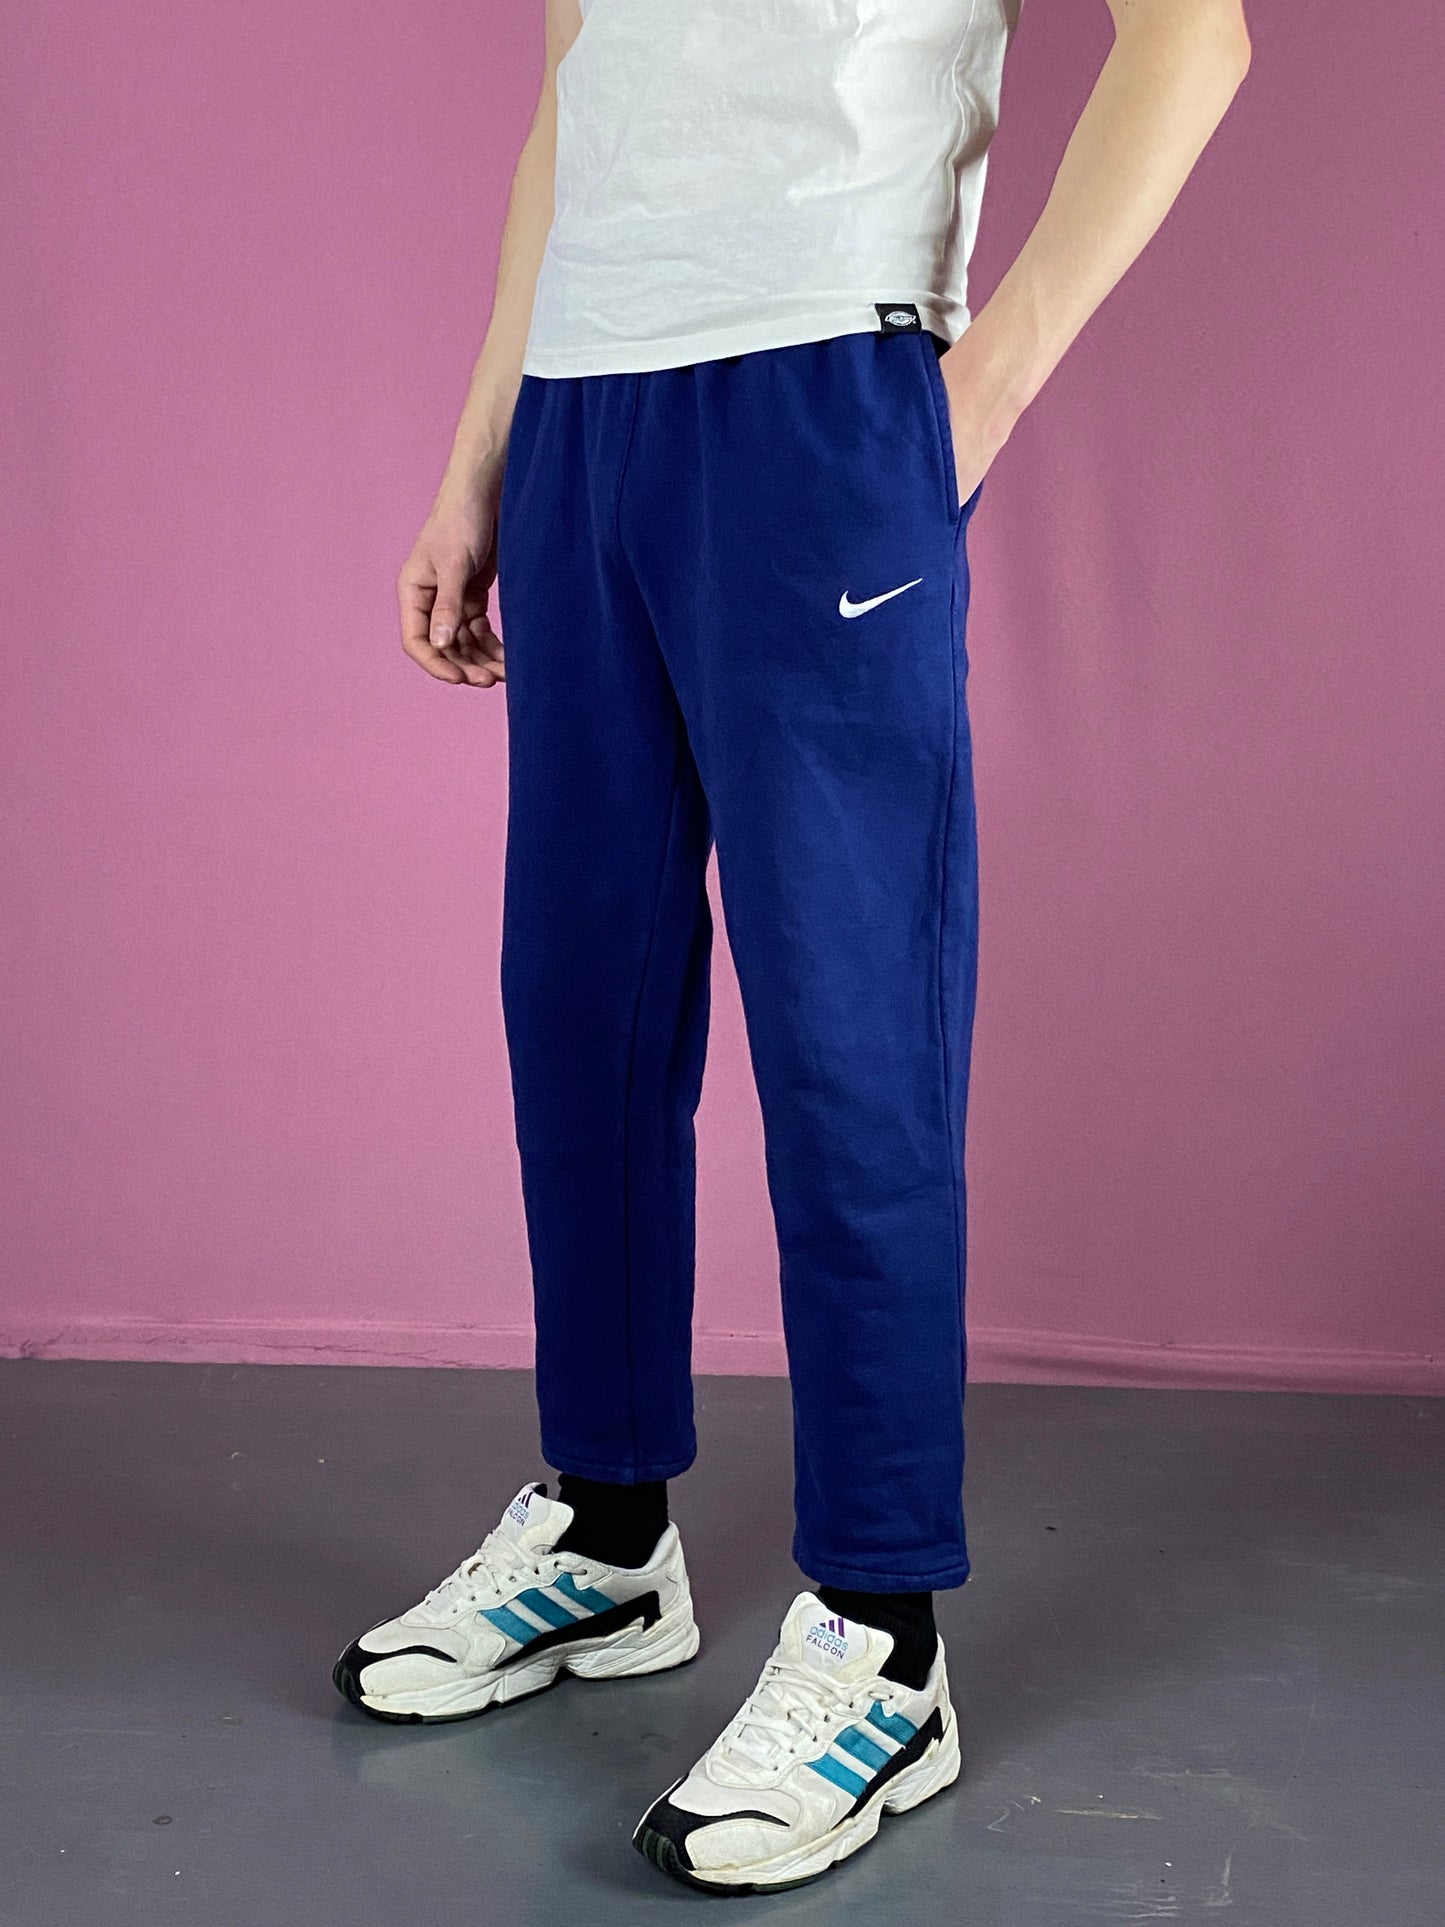 90s Nike Vintage Men's Sweatpants - Medium Blue Cotton Blend